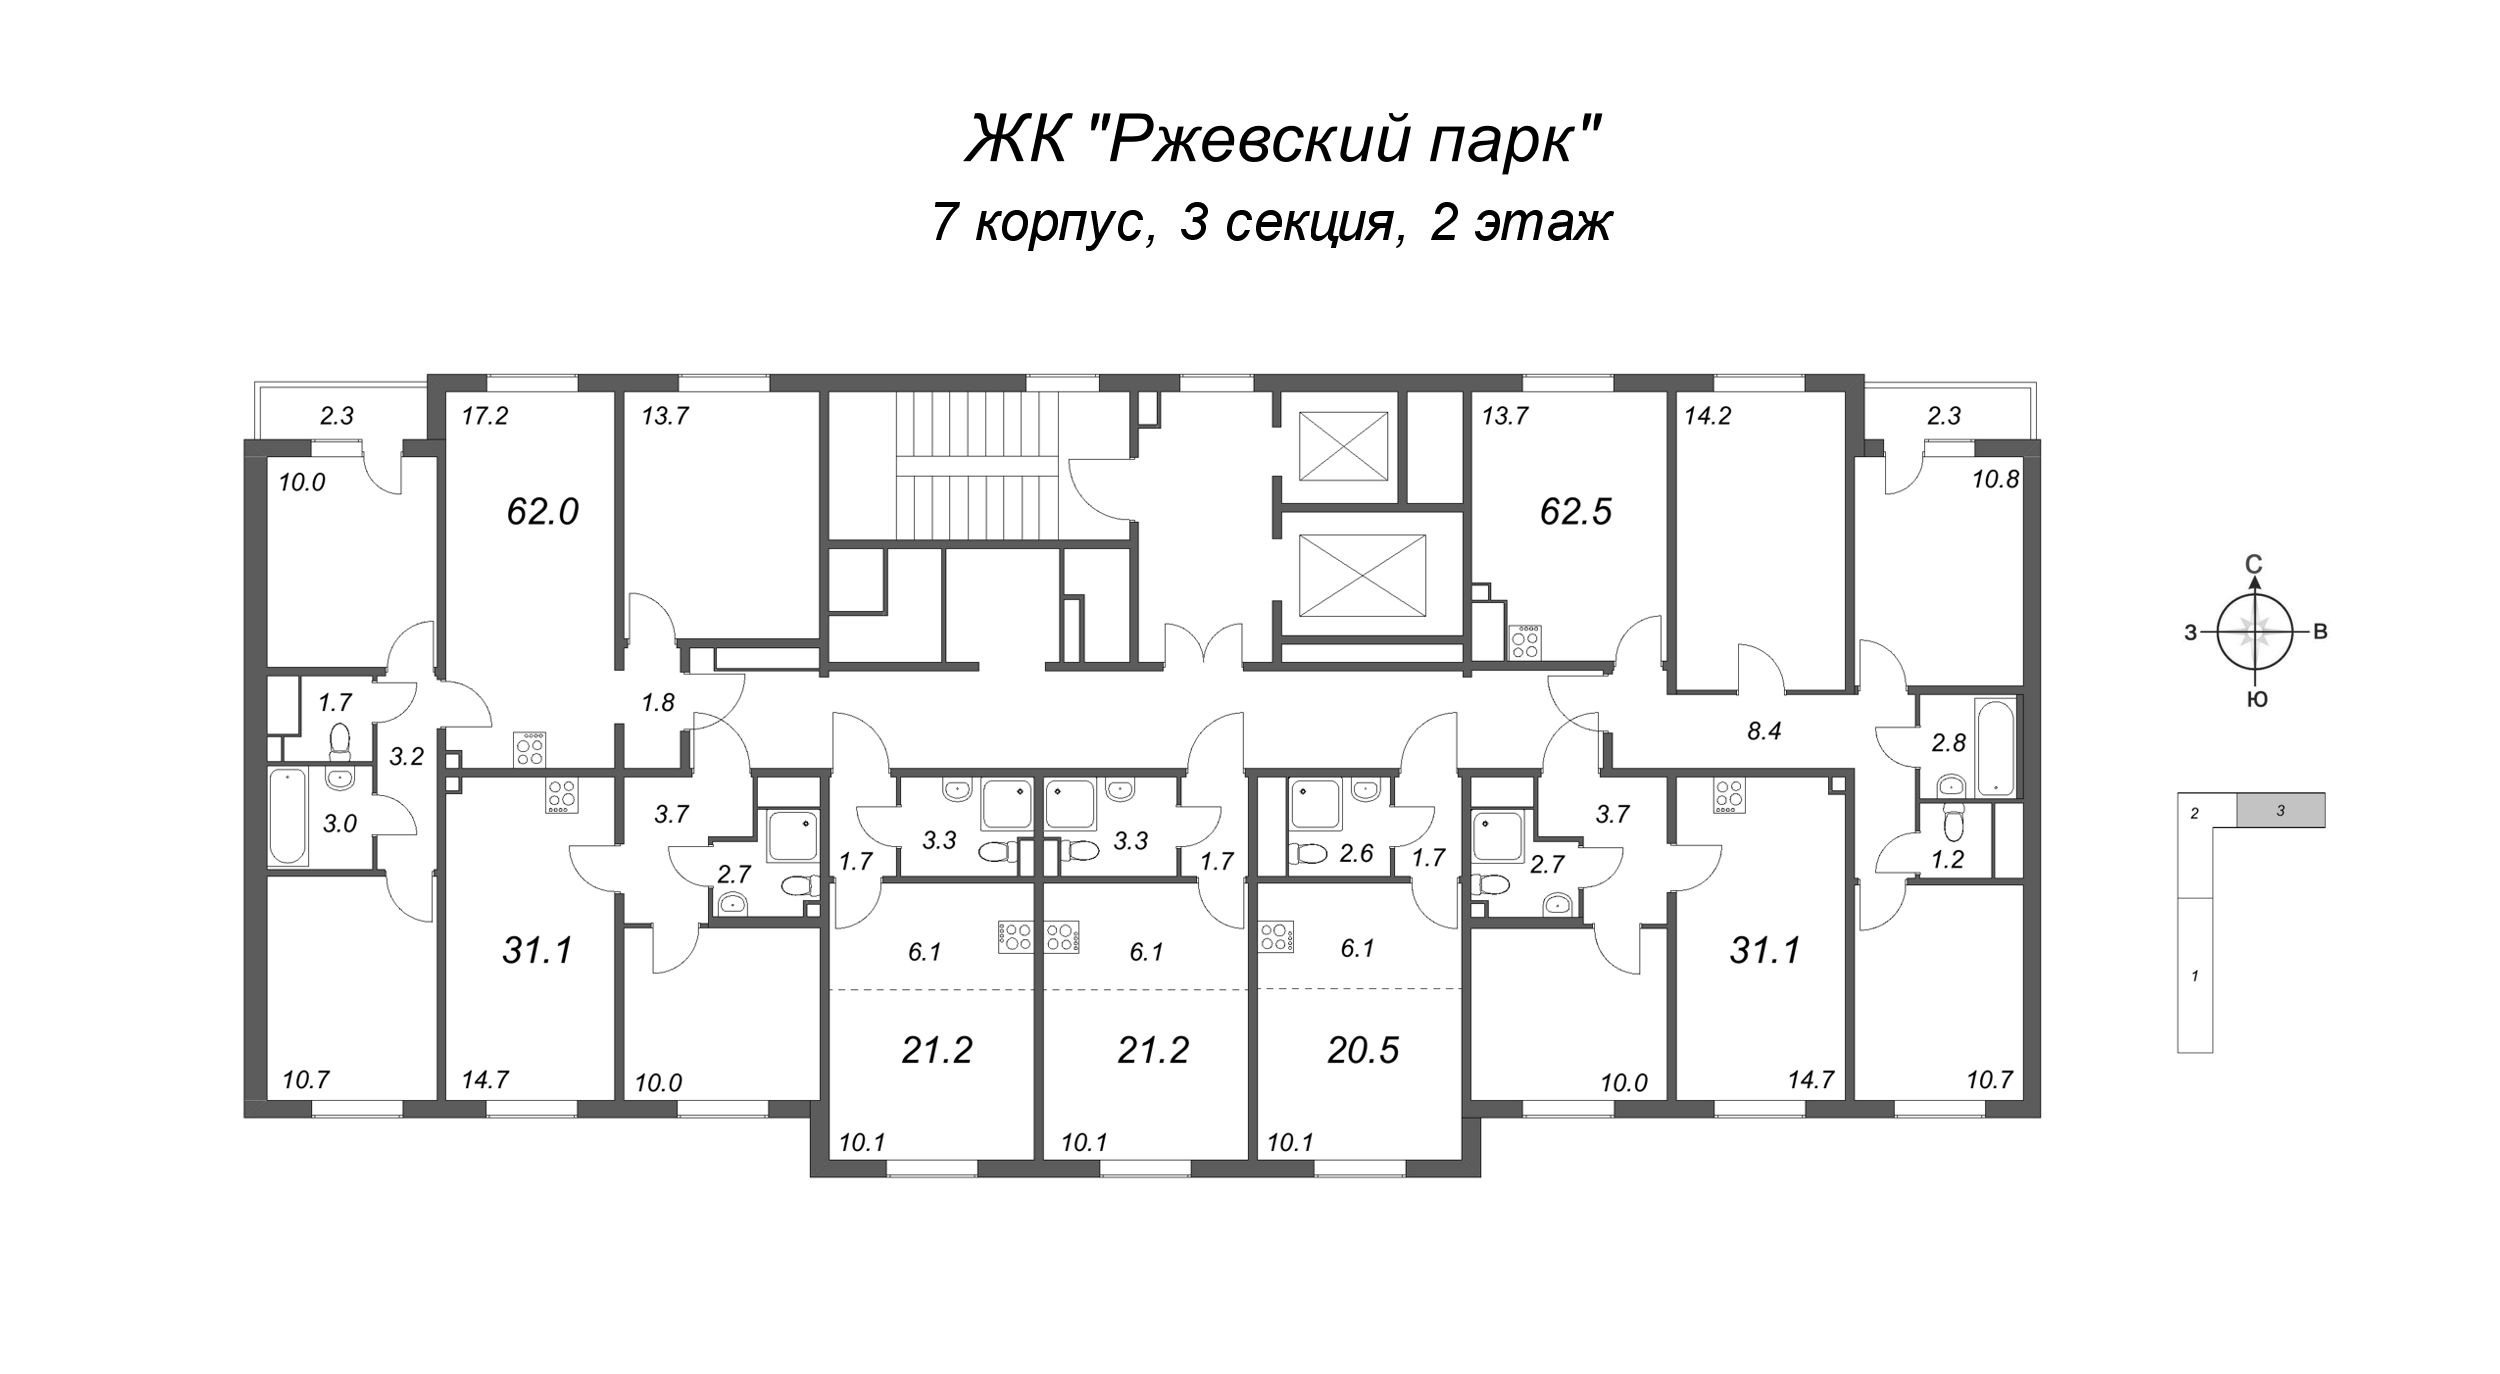 3-комнатная квартира, 62.5 м² в ЖК "ЛСР. Ржевский парк" - планировка этажа